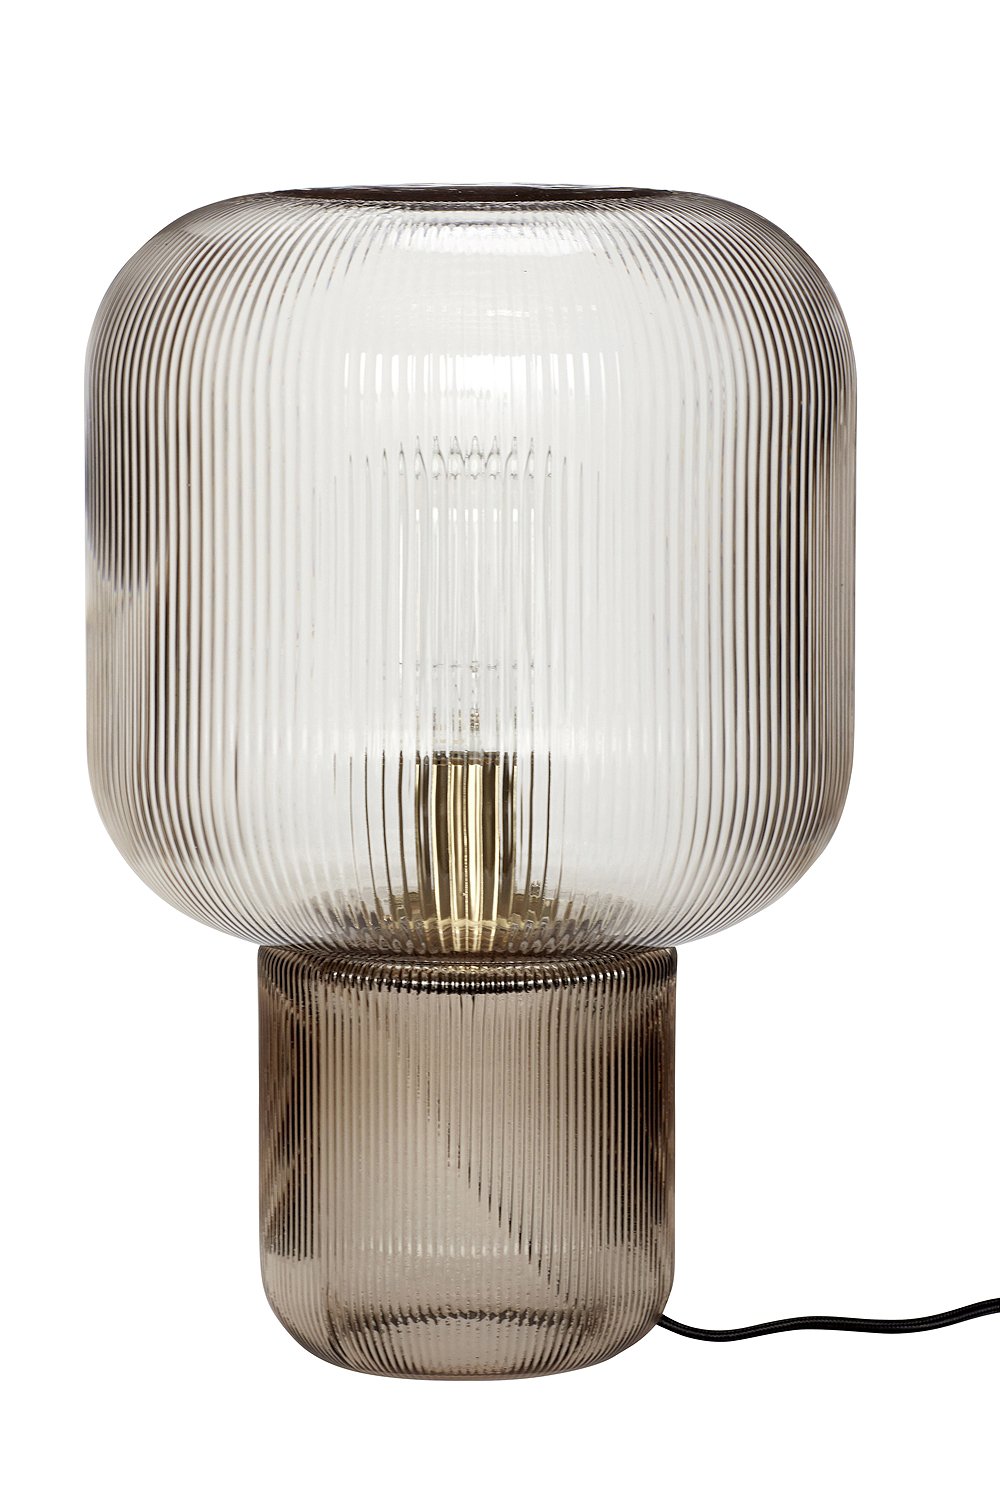 TISCHLAMPE LAMPENFUß GLAS LAMPE IMPRESSIONEN SHABBY CHIC ELEGANTER DEKO LAMPE 